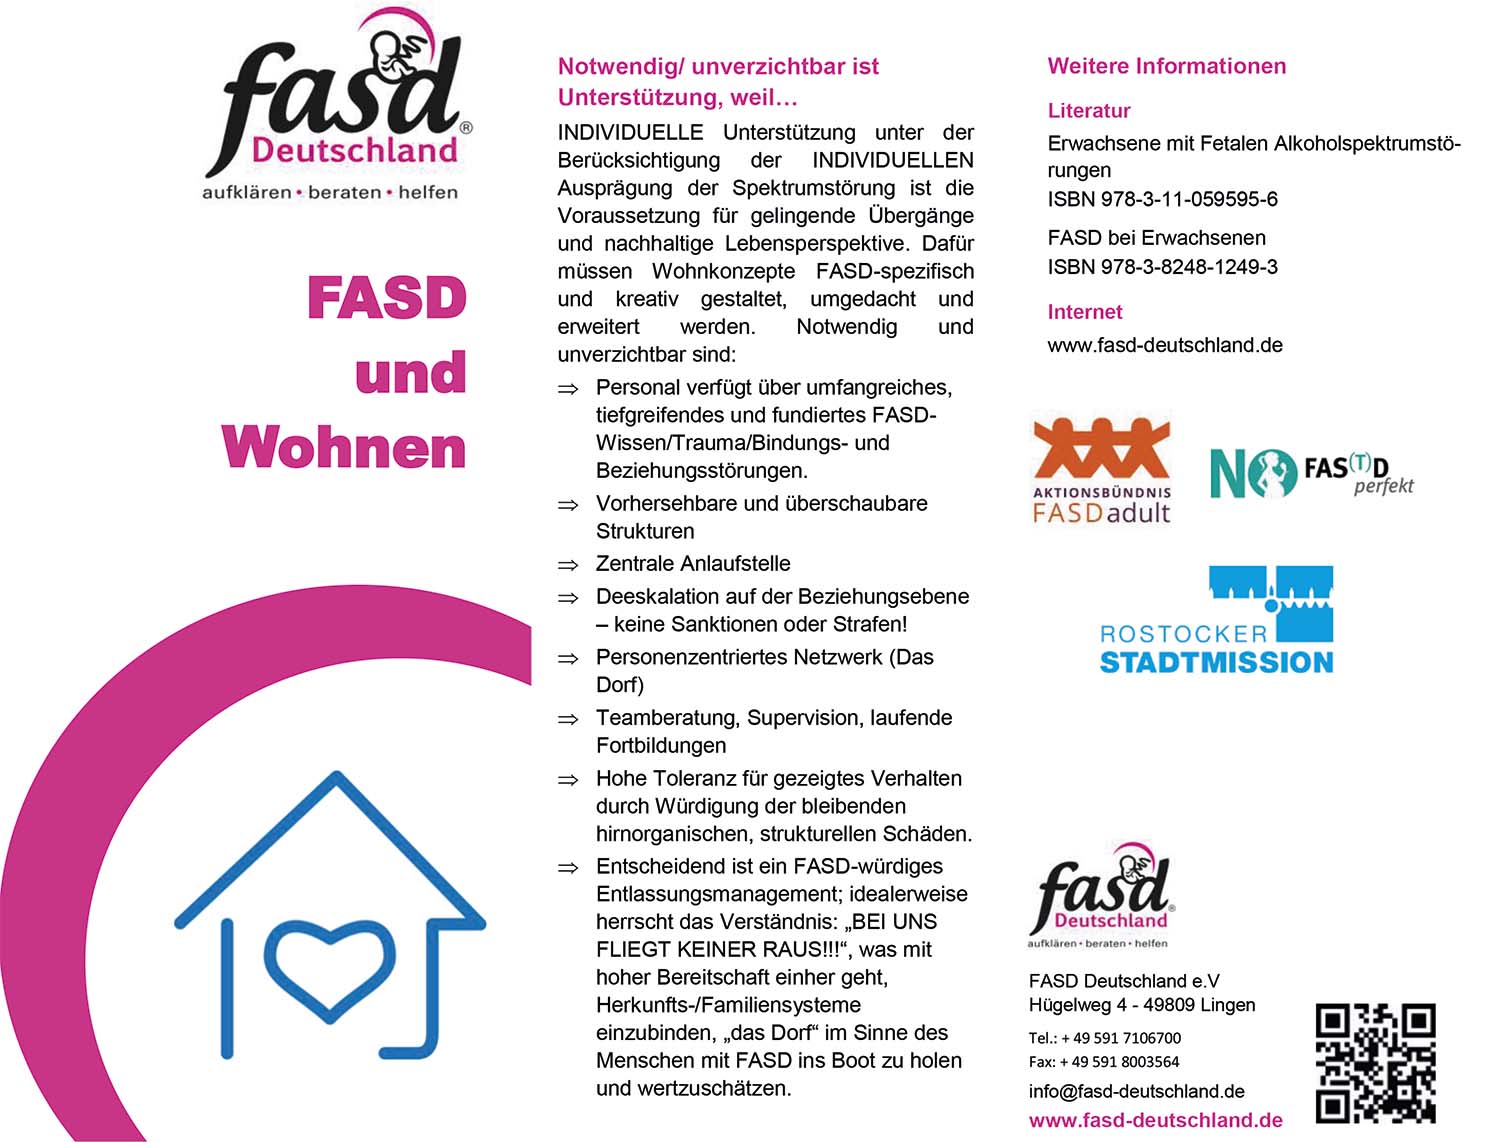 fasd Deutschland Flyer zum Thema FASD und Wohnen